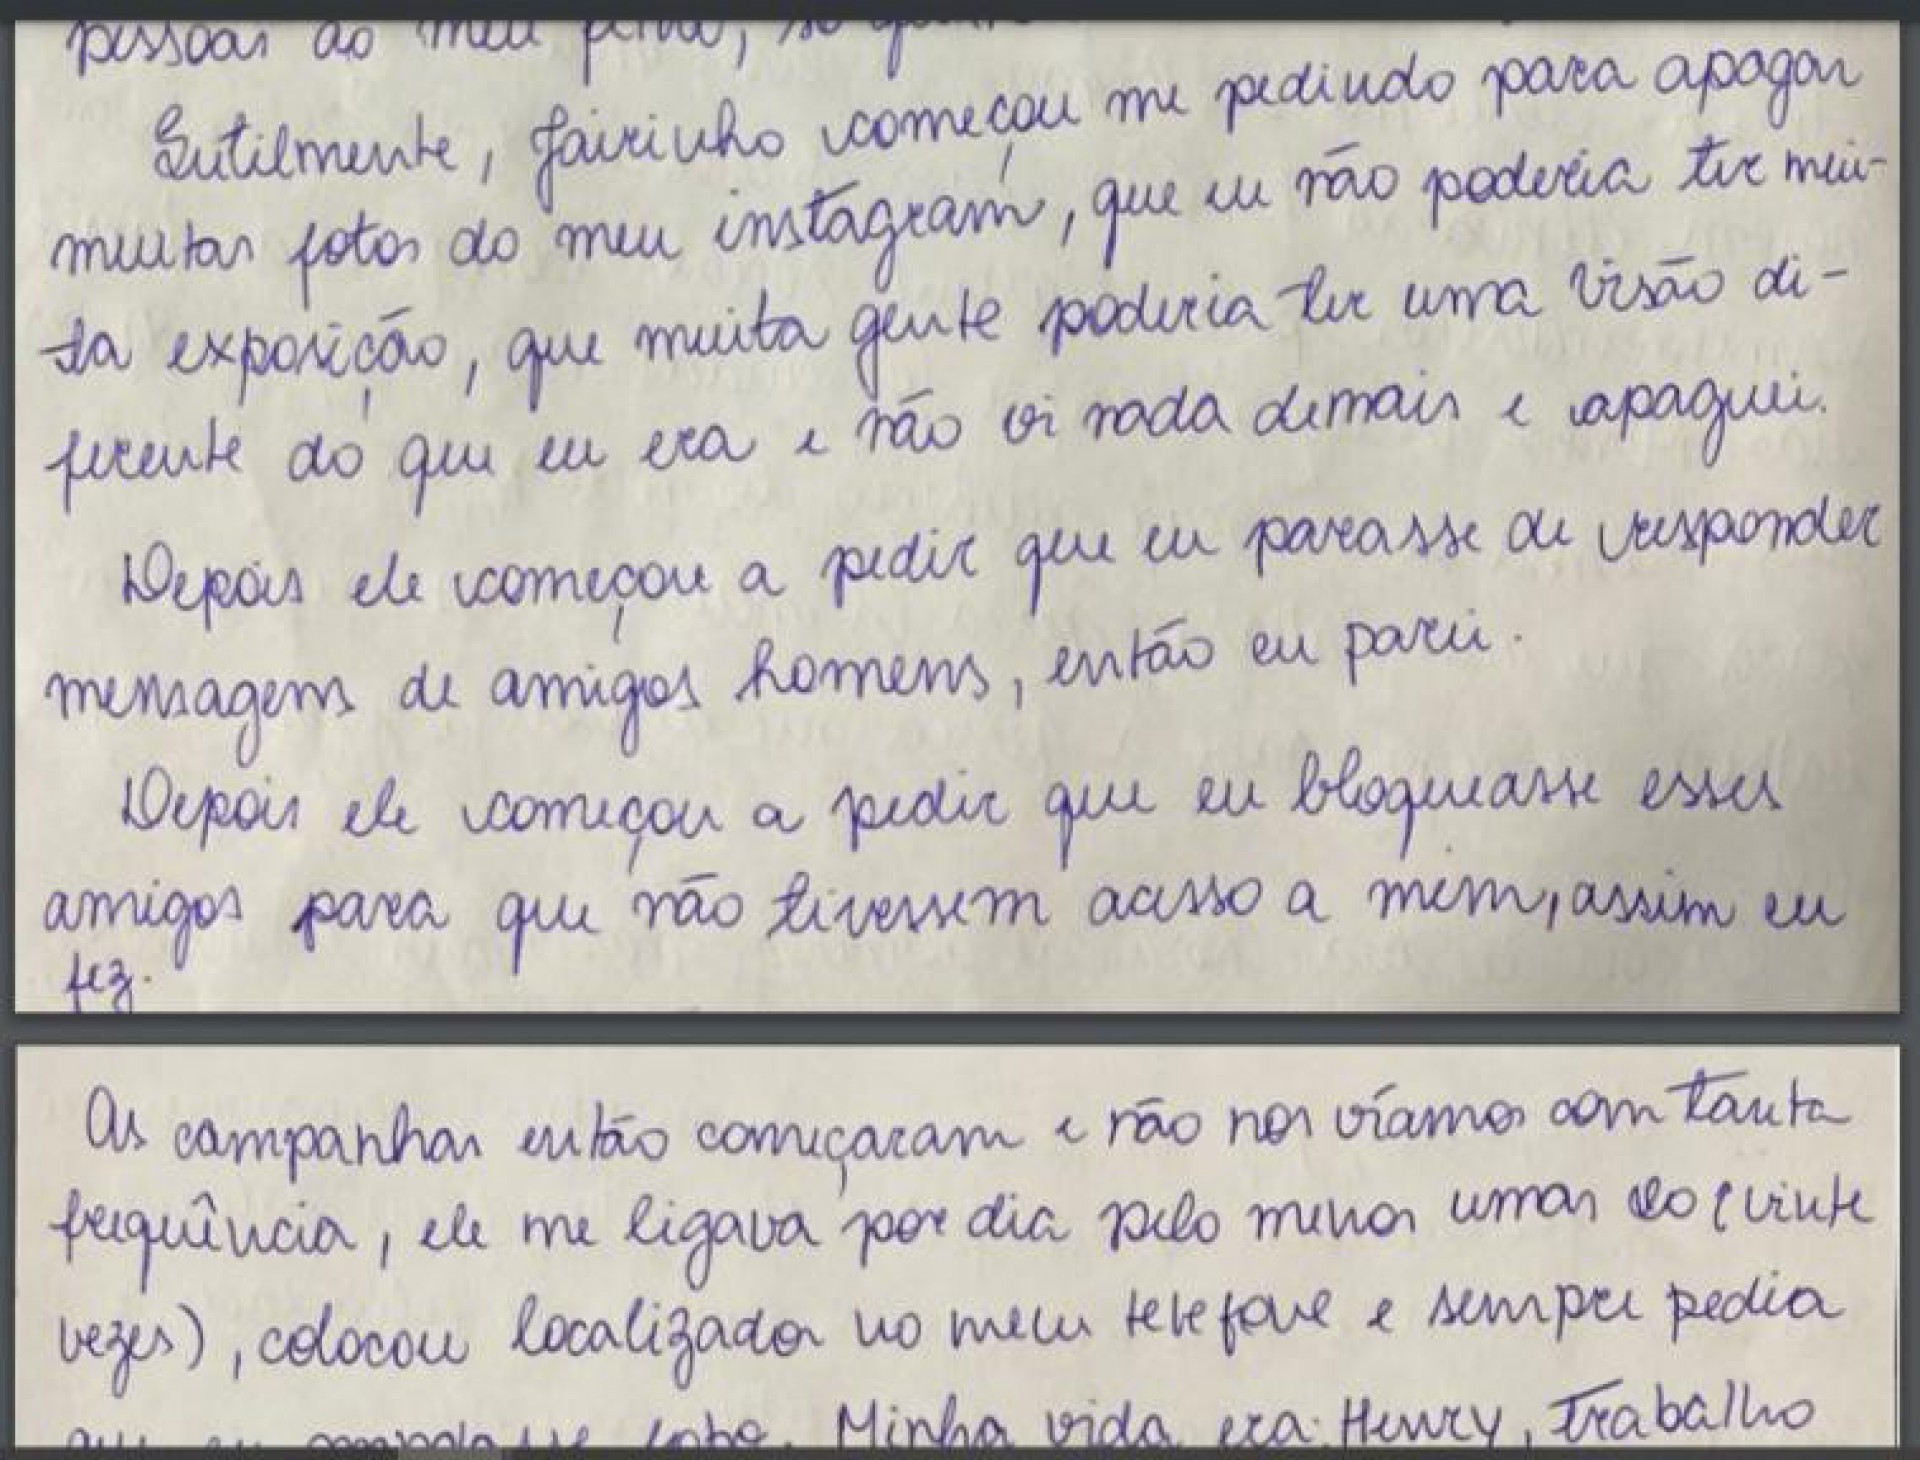 Na cadeia, Monique Medeiros escreveu carta de 29 páginas em que afirma que Jairinho era muito ciumento e controlador  - Divulgação 